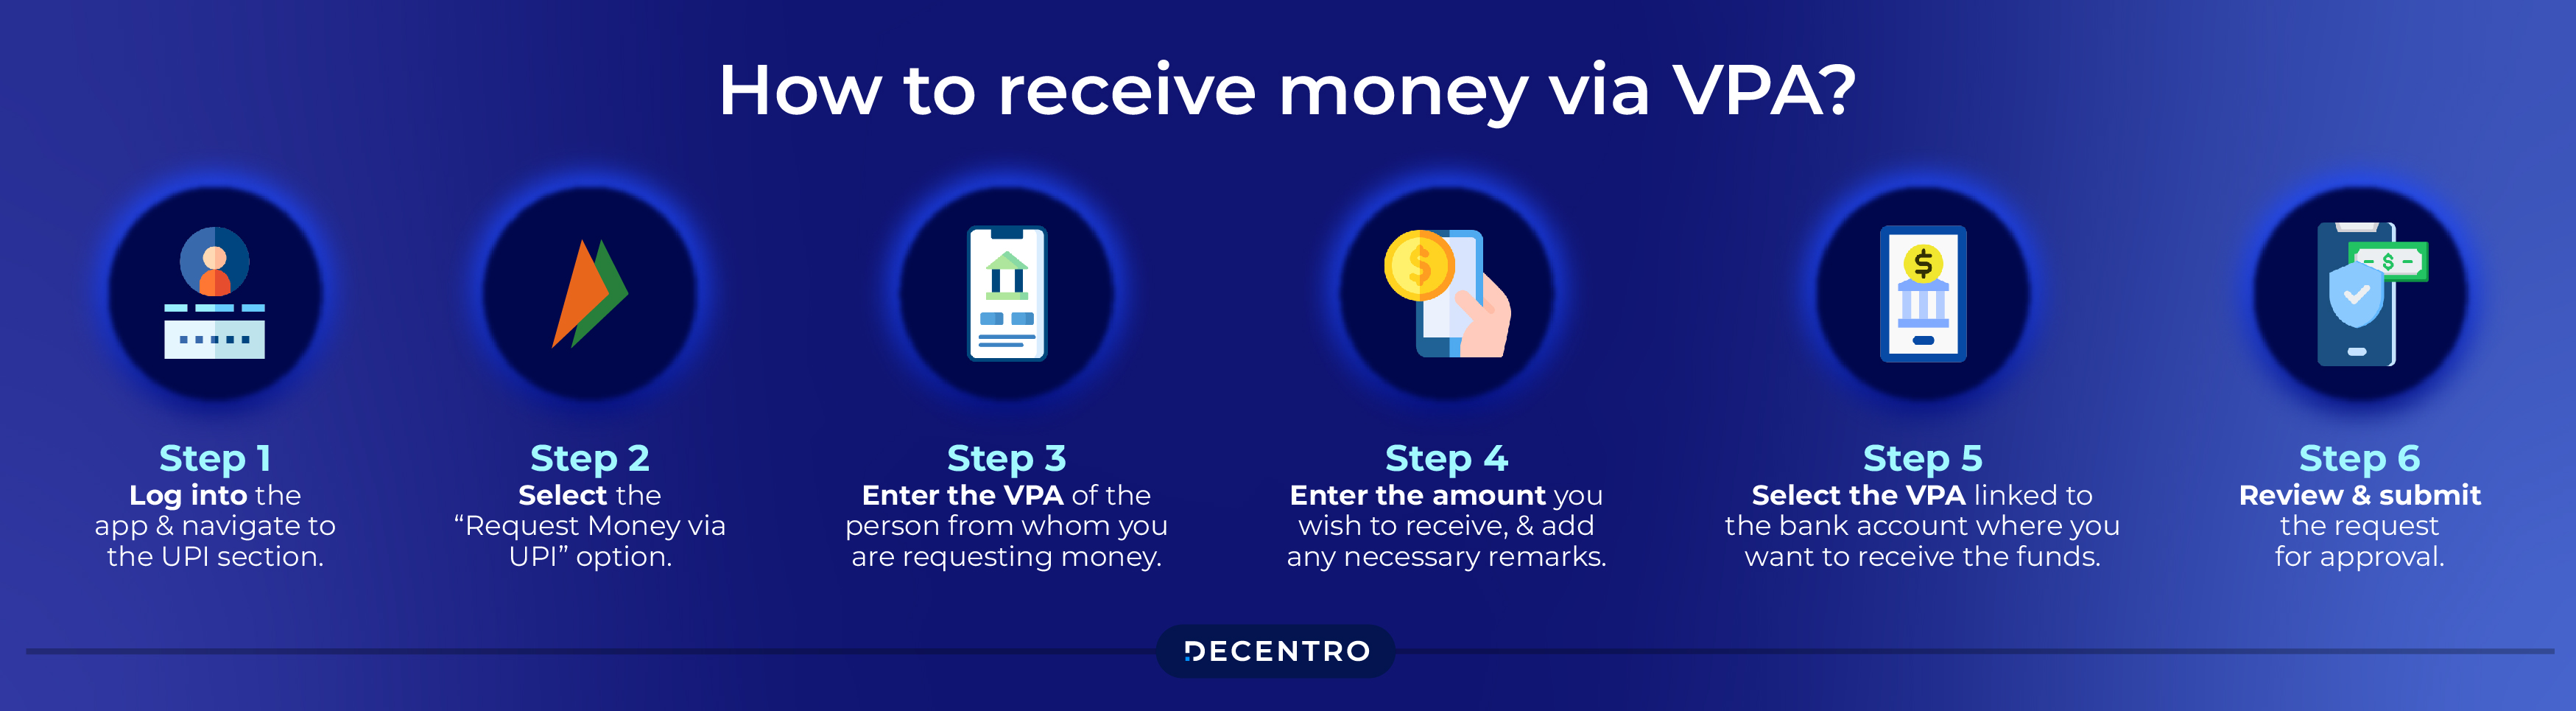 How to receive money via VPA?